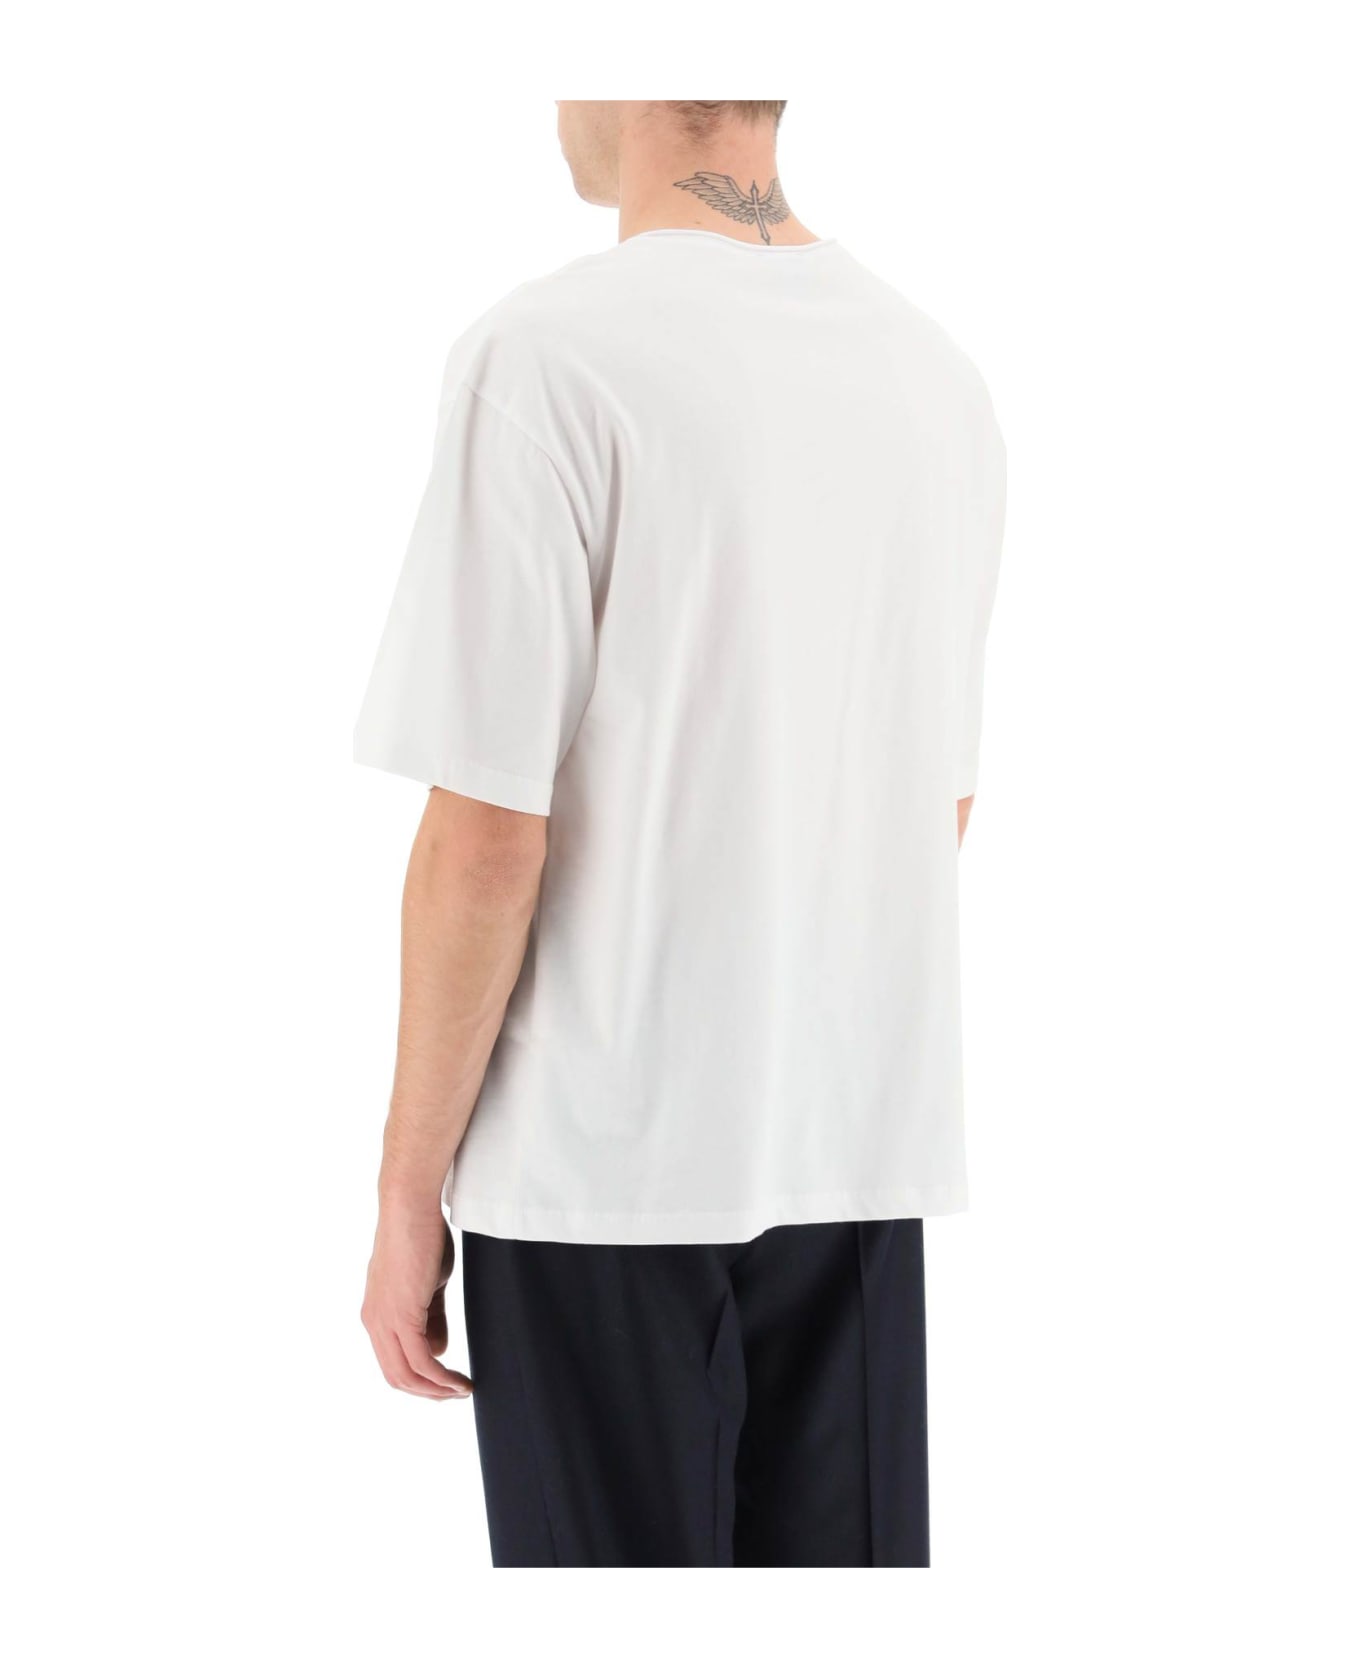 A.P.C. Jeremy T-shirt - White